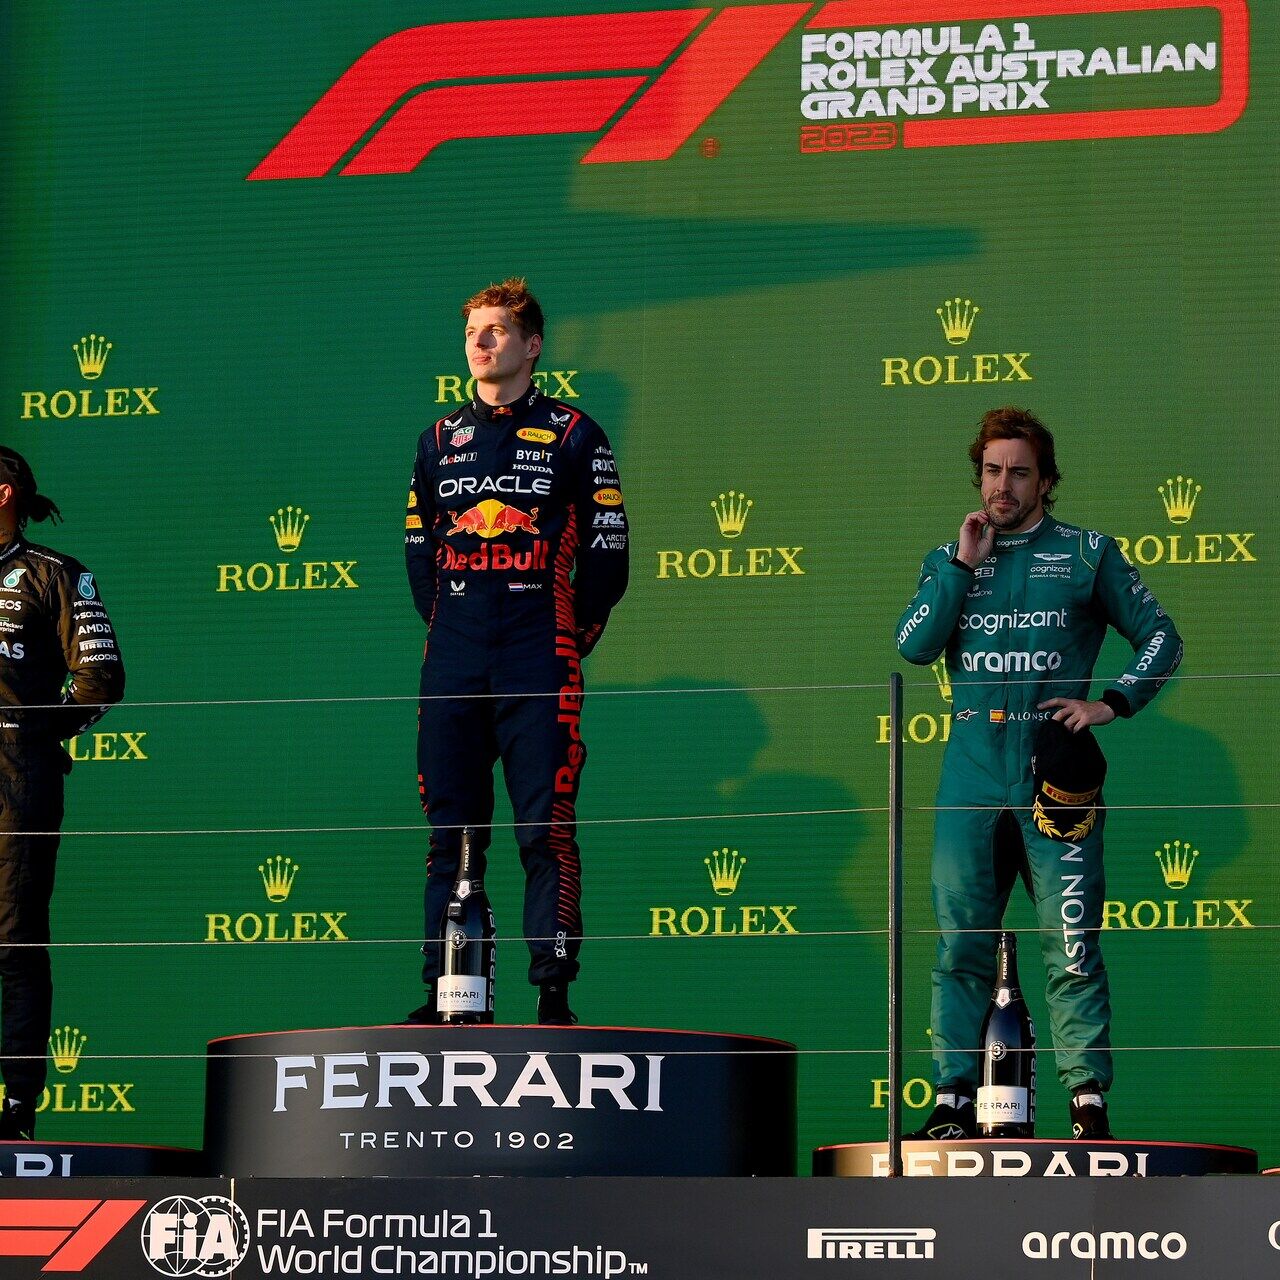 VN Australije: Velika nagrada Australije 2023. donijela je 11 osvojenih naslova Svjetskog prvenstva u povijesti Formule 1 grupiranih na završnom postolju, s Maxom Verstappenom prvim nad Lewisom Hamiltonom i Fernandom Alonsom